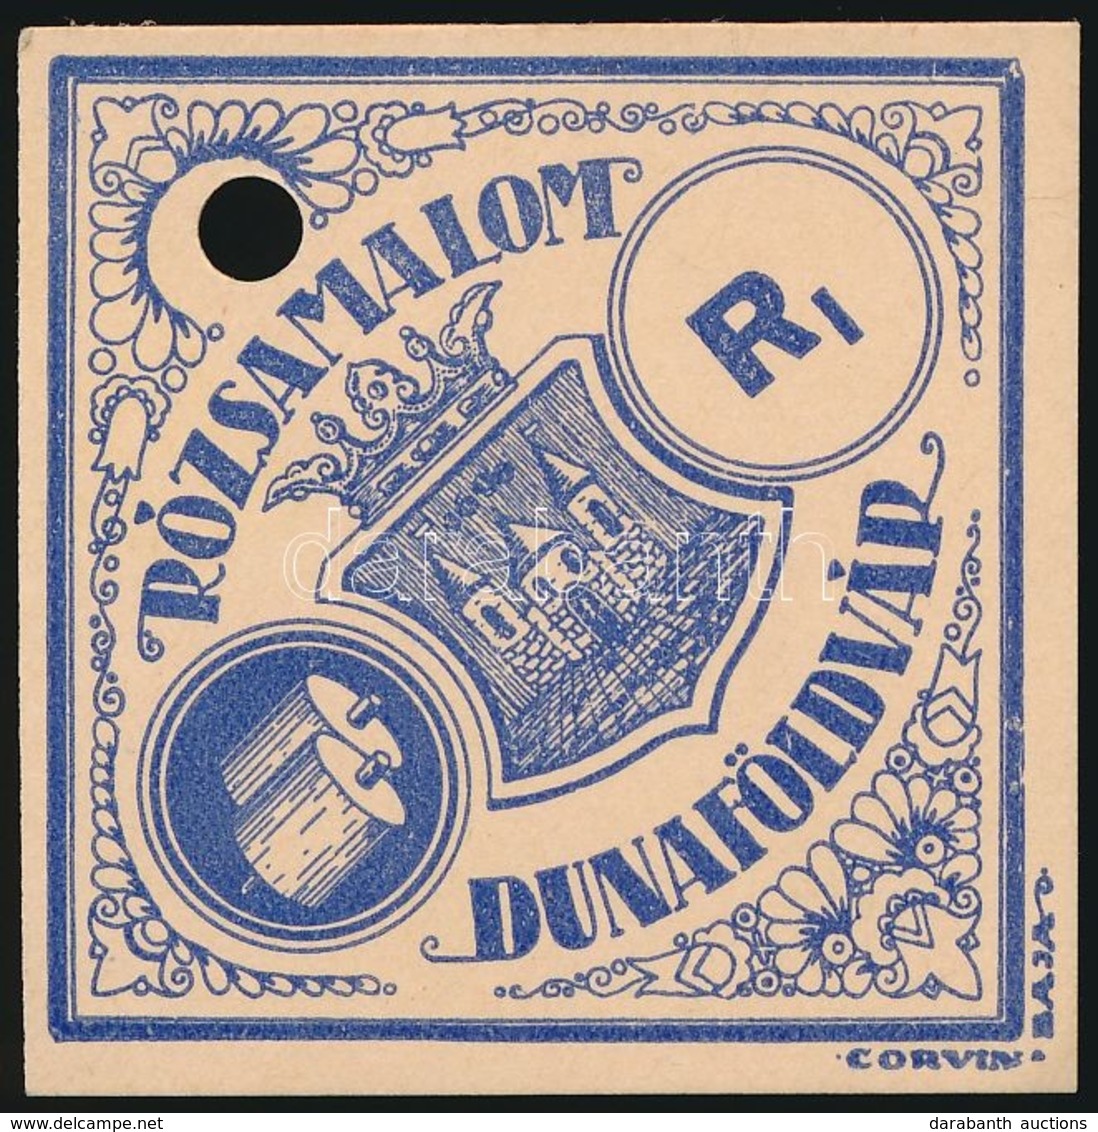 Cca 1900 Liszteszsák Zárjegy. Dunaföldvár. / Flour Bag Tax Stamp - Unclassified